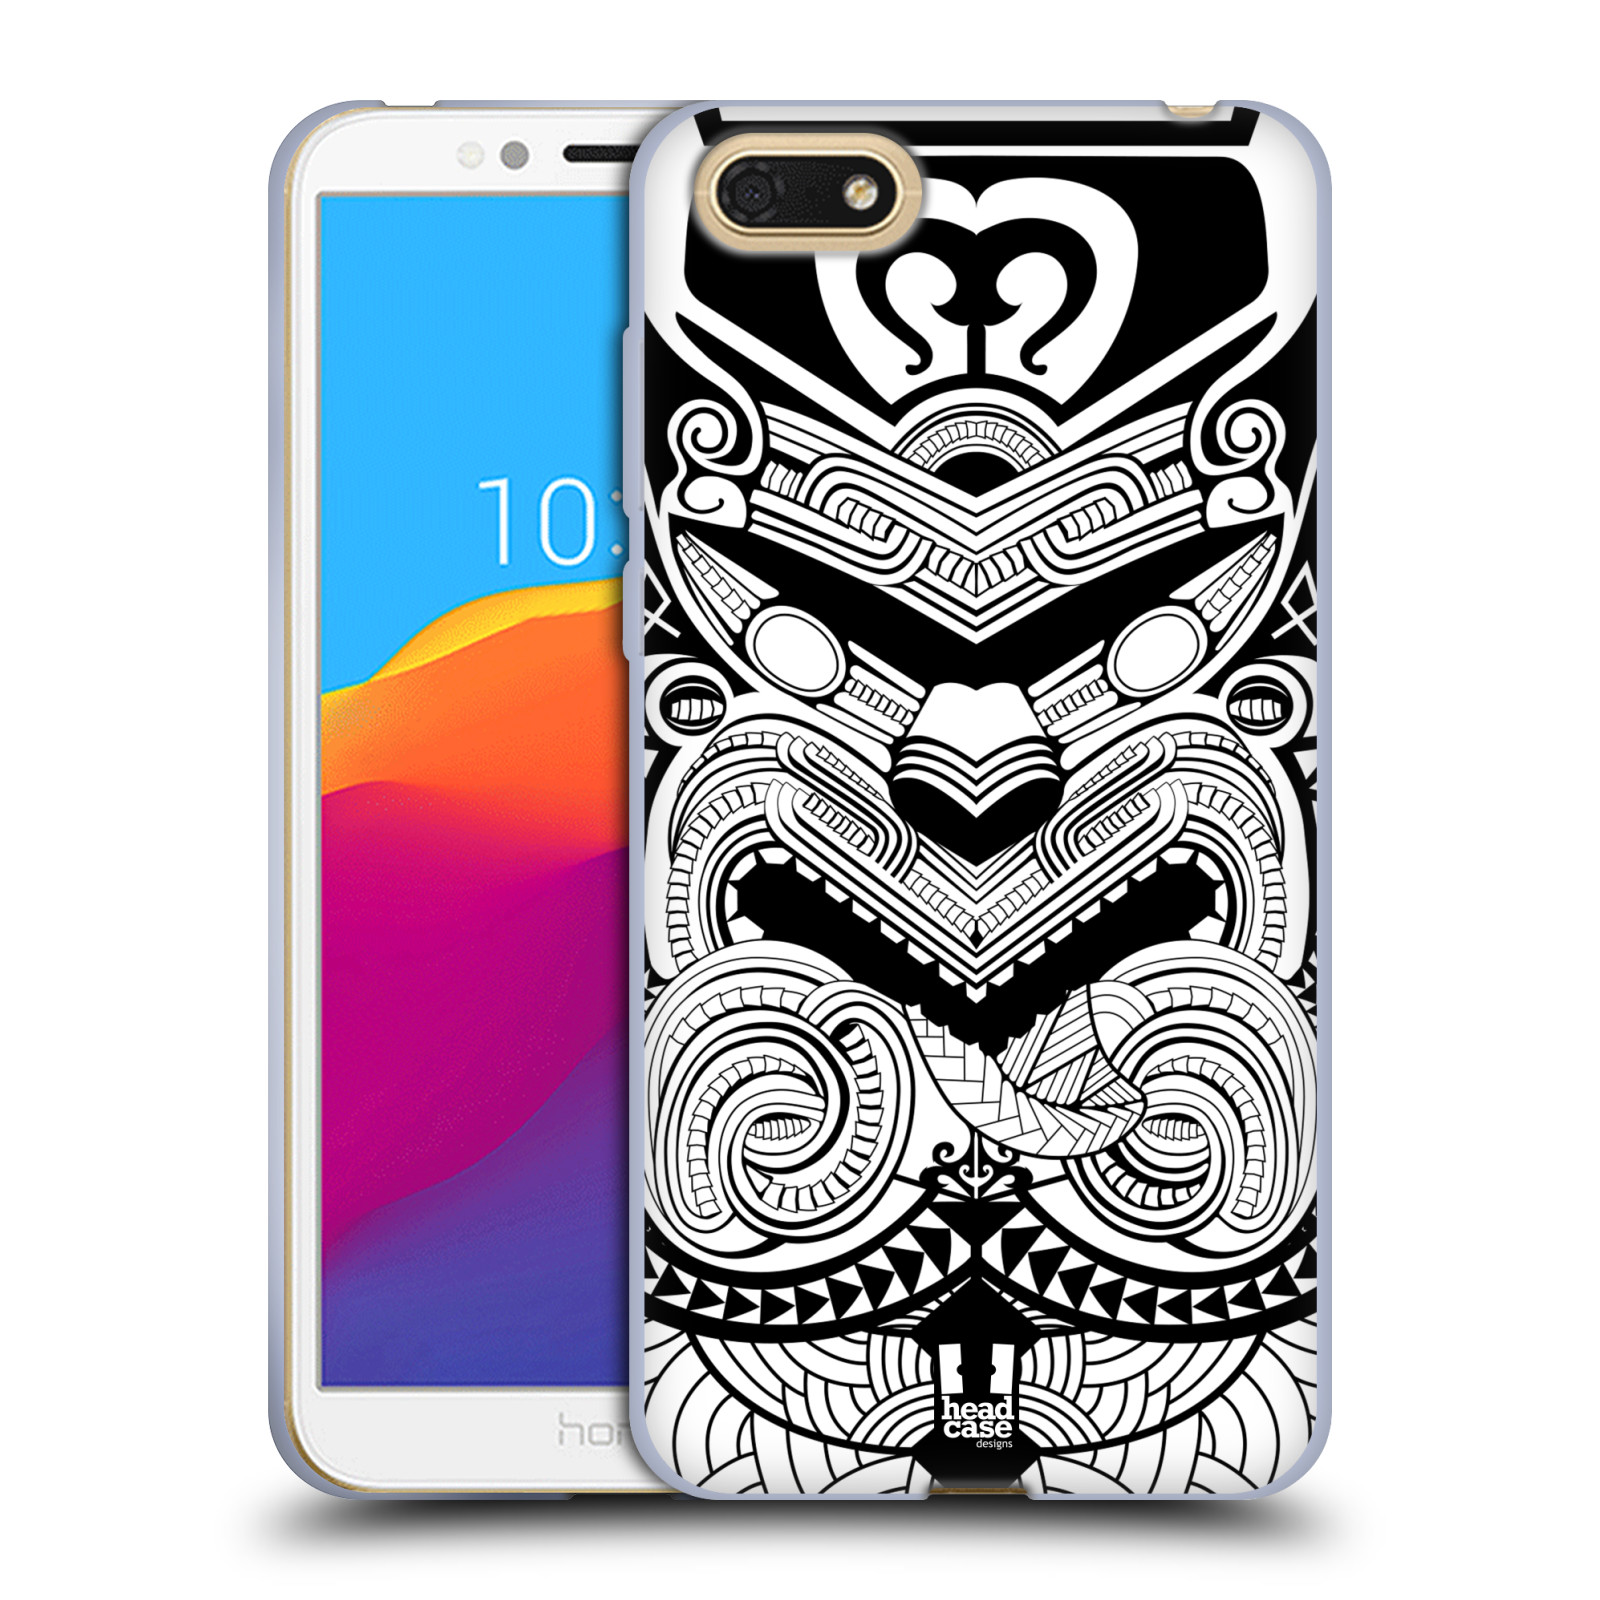 HEAD CASE silikonový obal na mobil Huawei Y5 2018 vzor Maorské tetování motivy černá a bílá VÁLEČNÍK